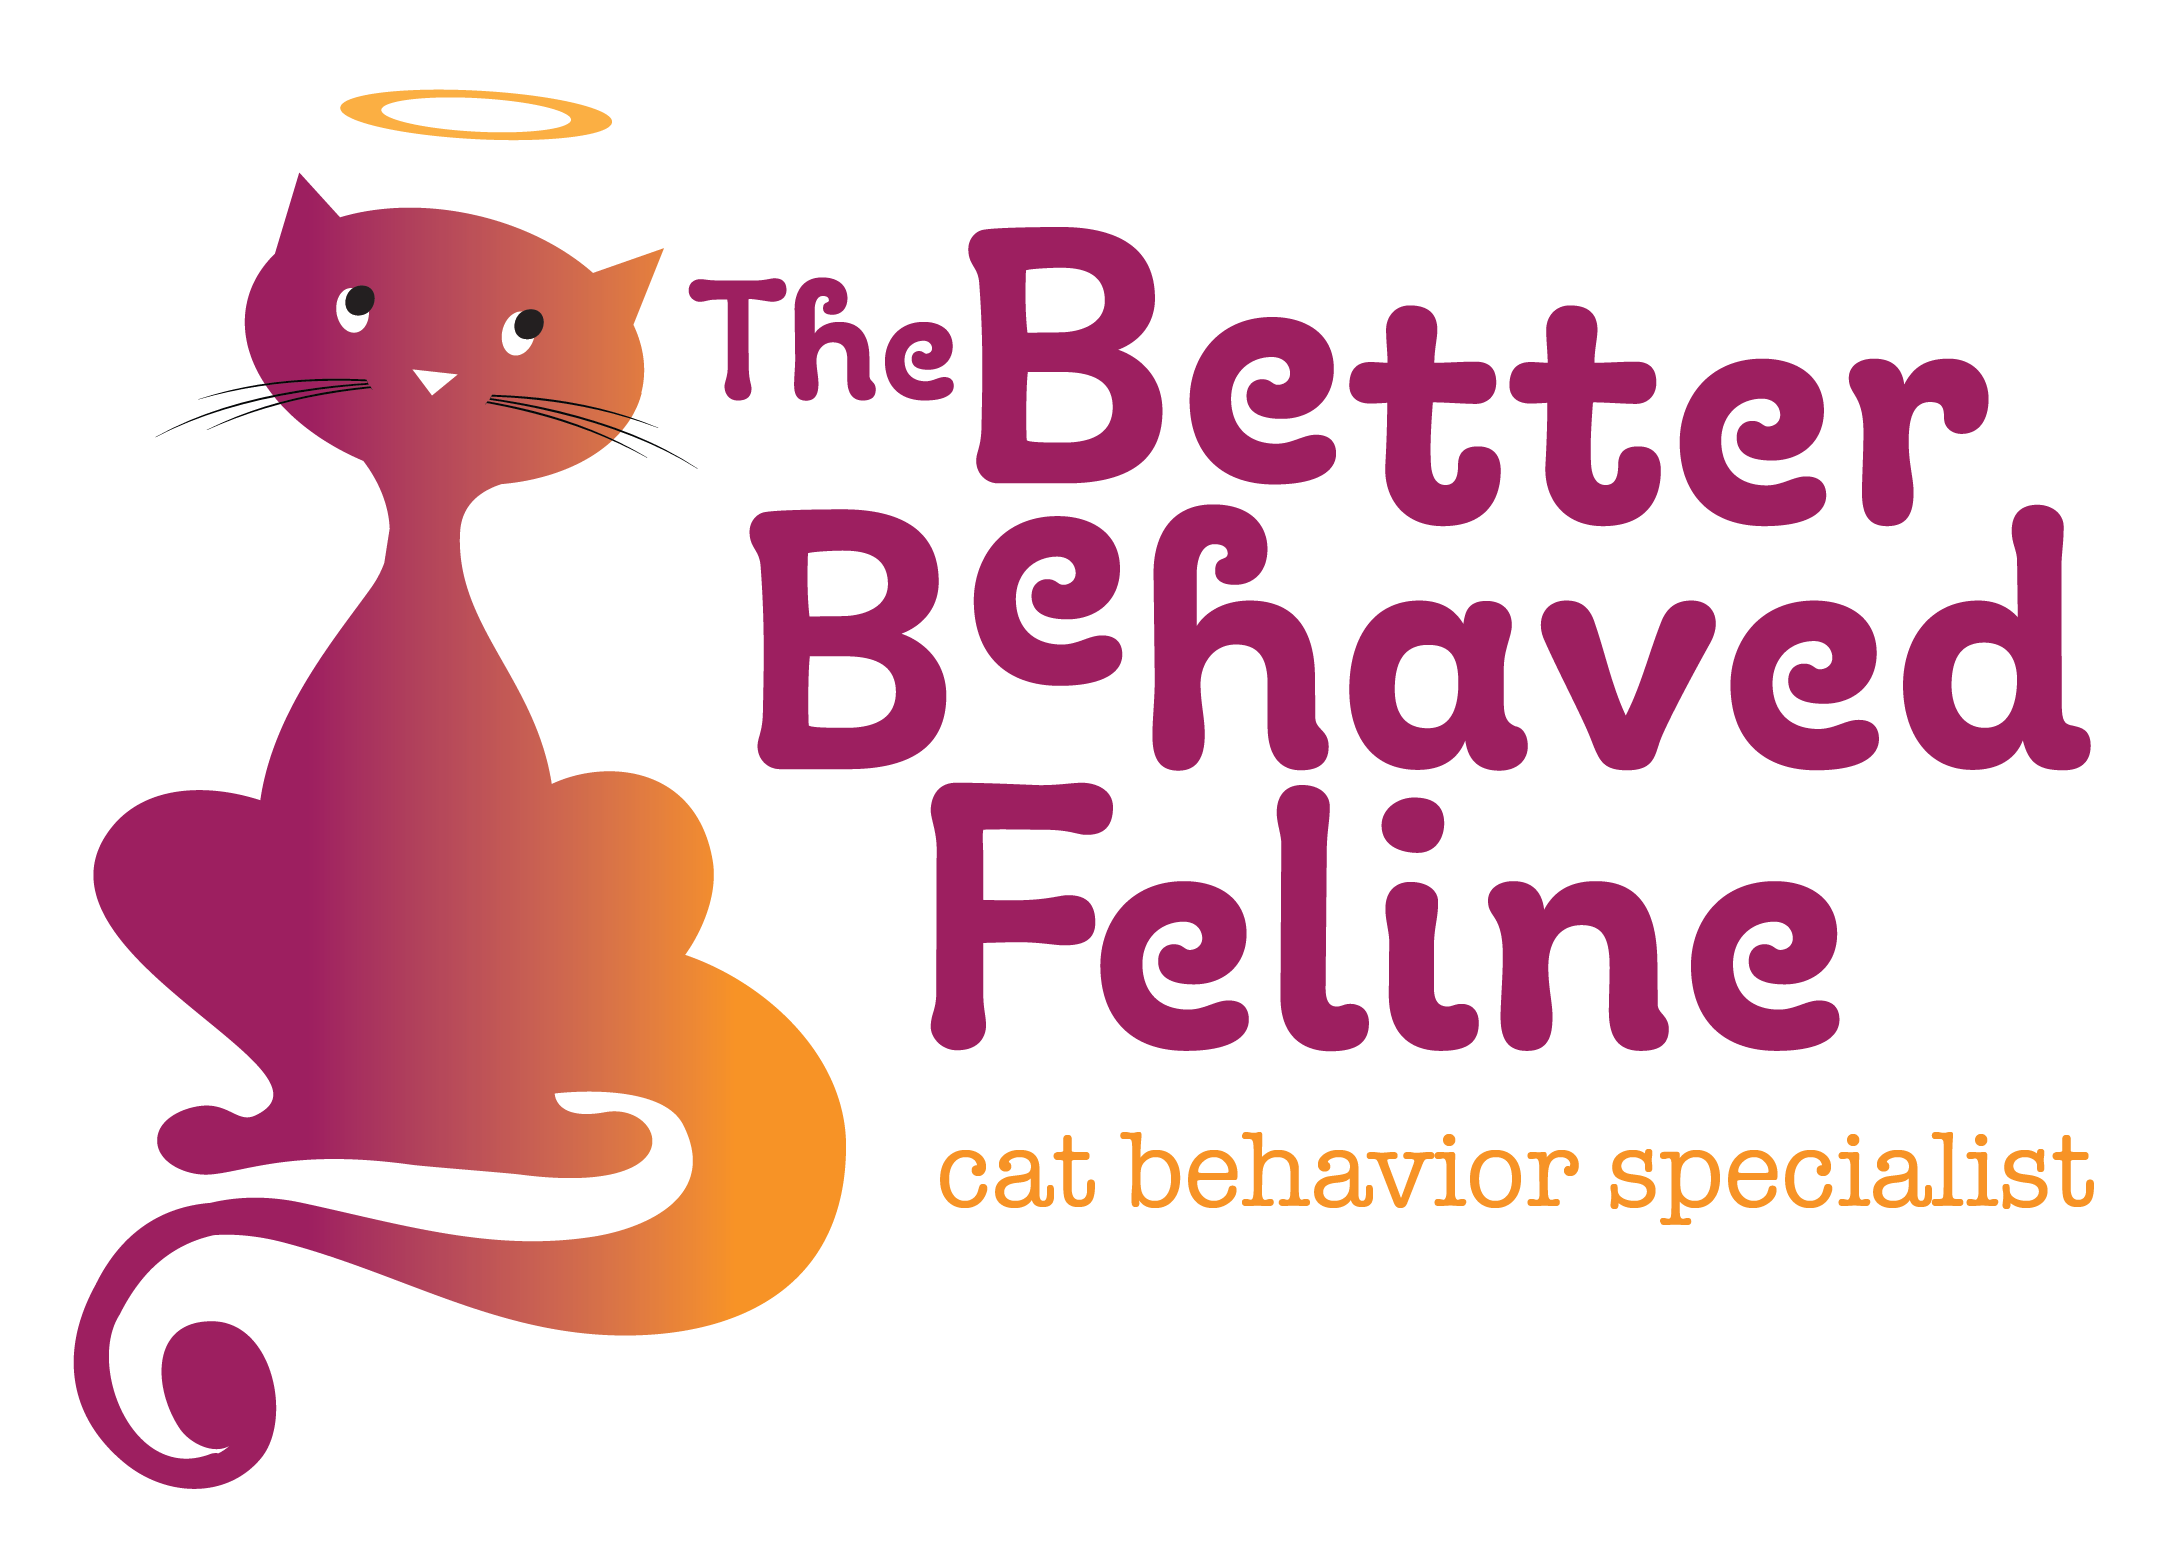 The Better Behaved Feline